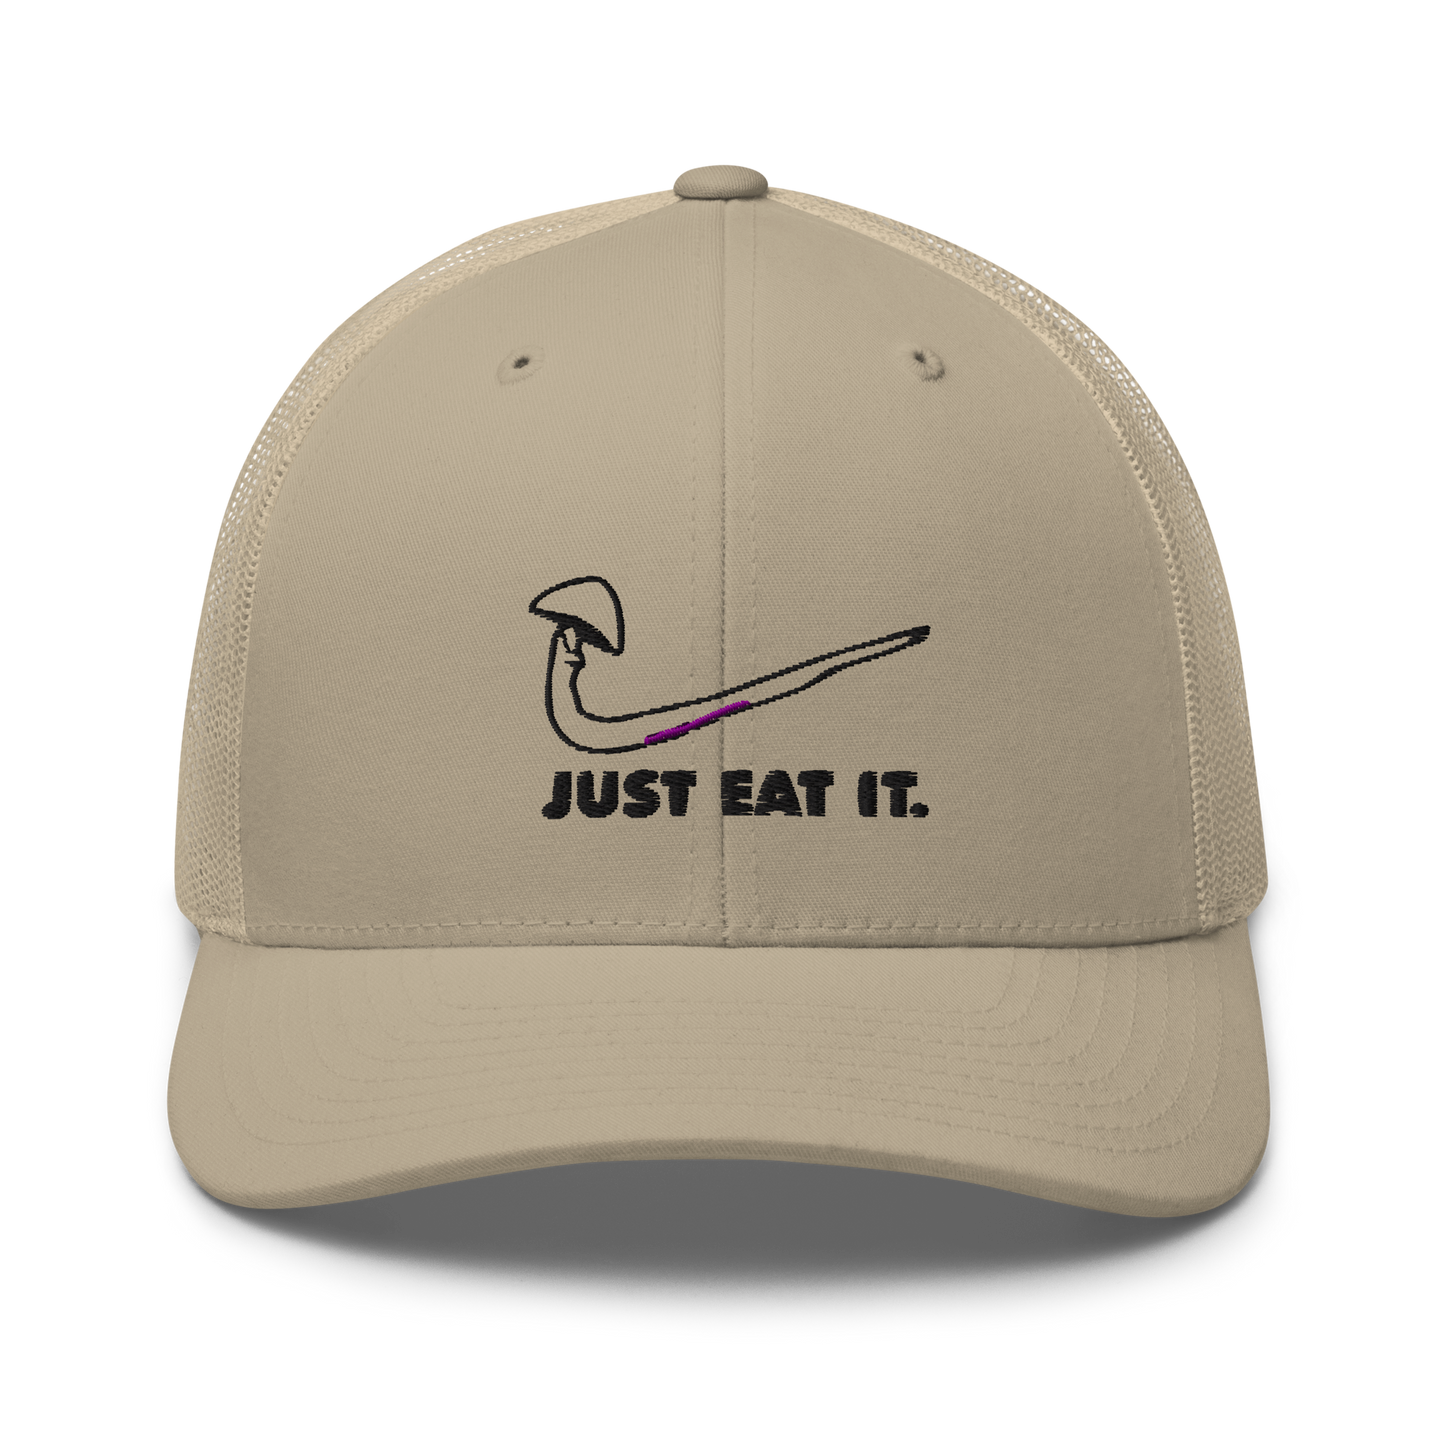 Just Eat It Trucker Hat